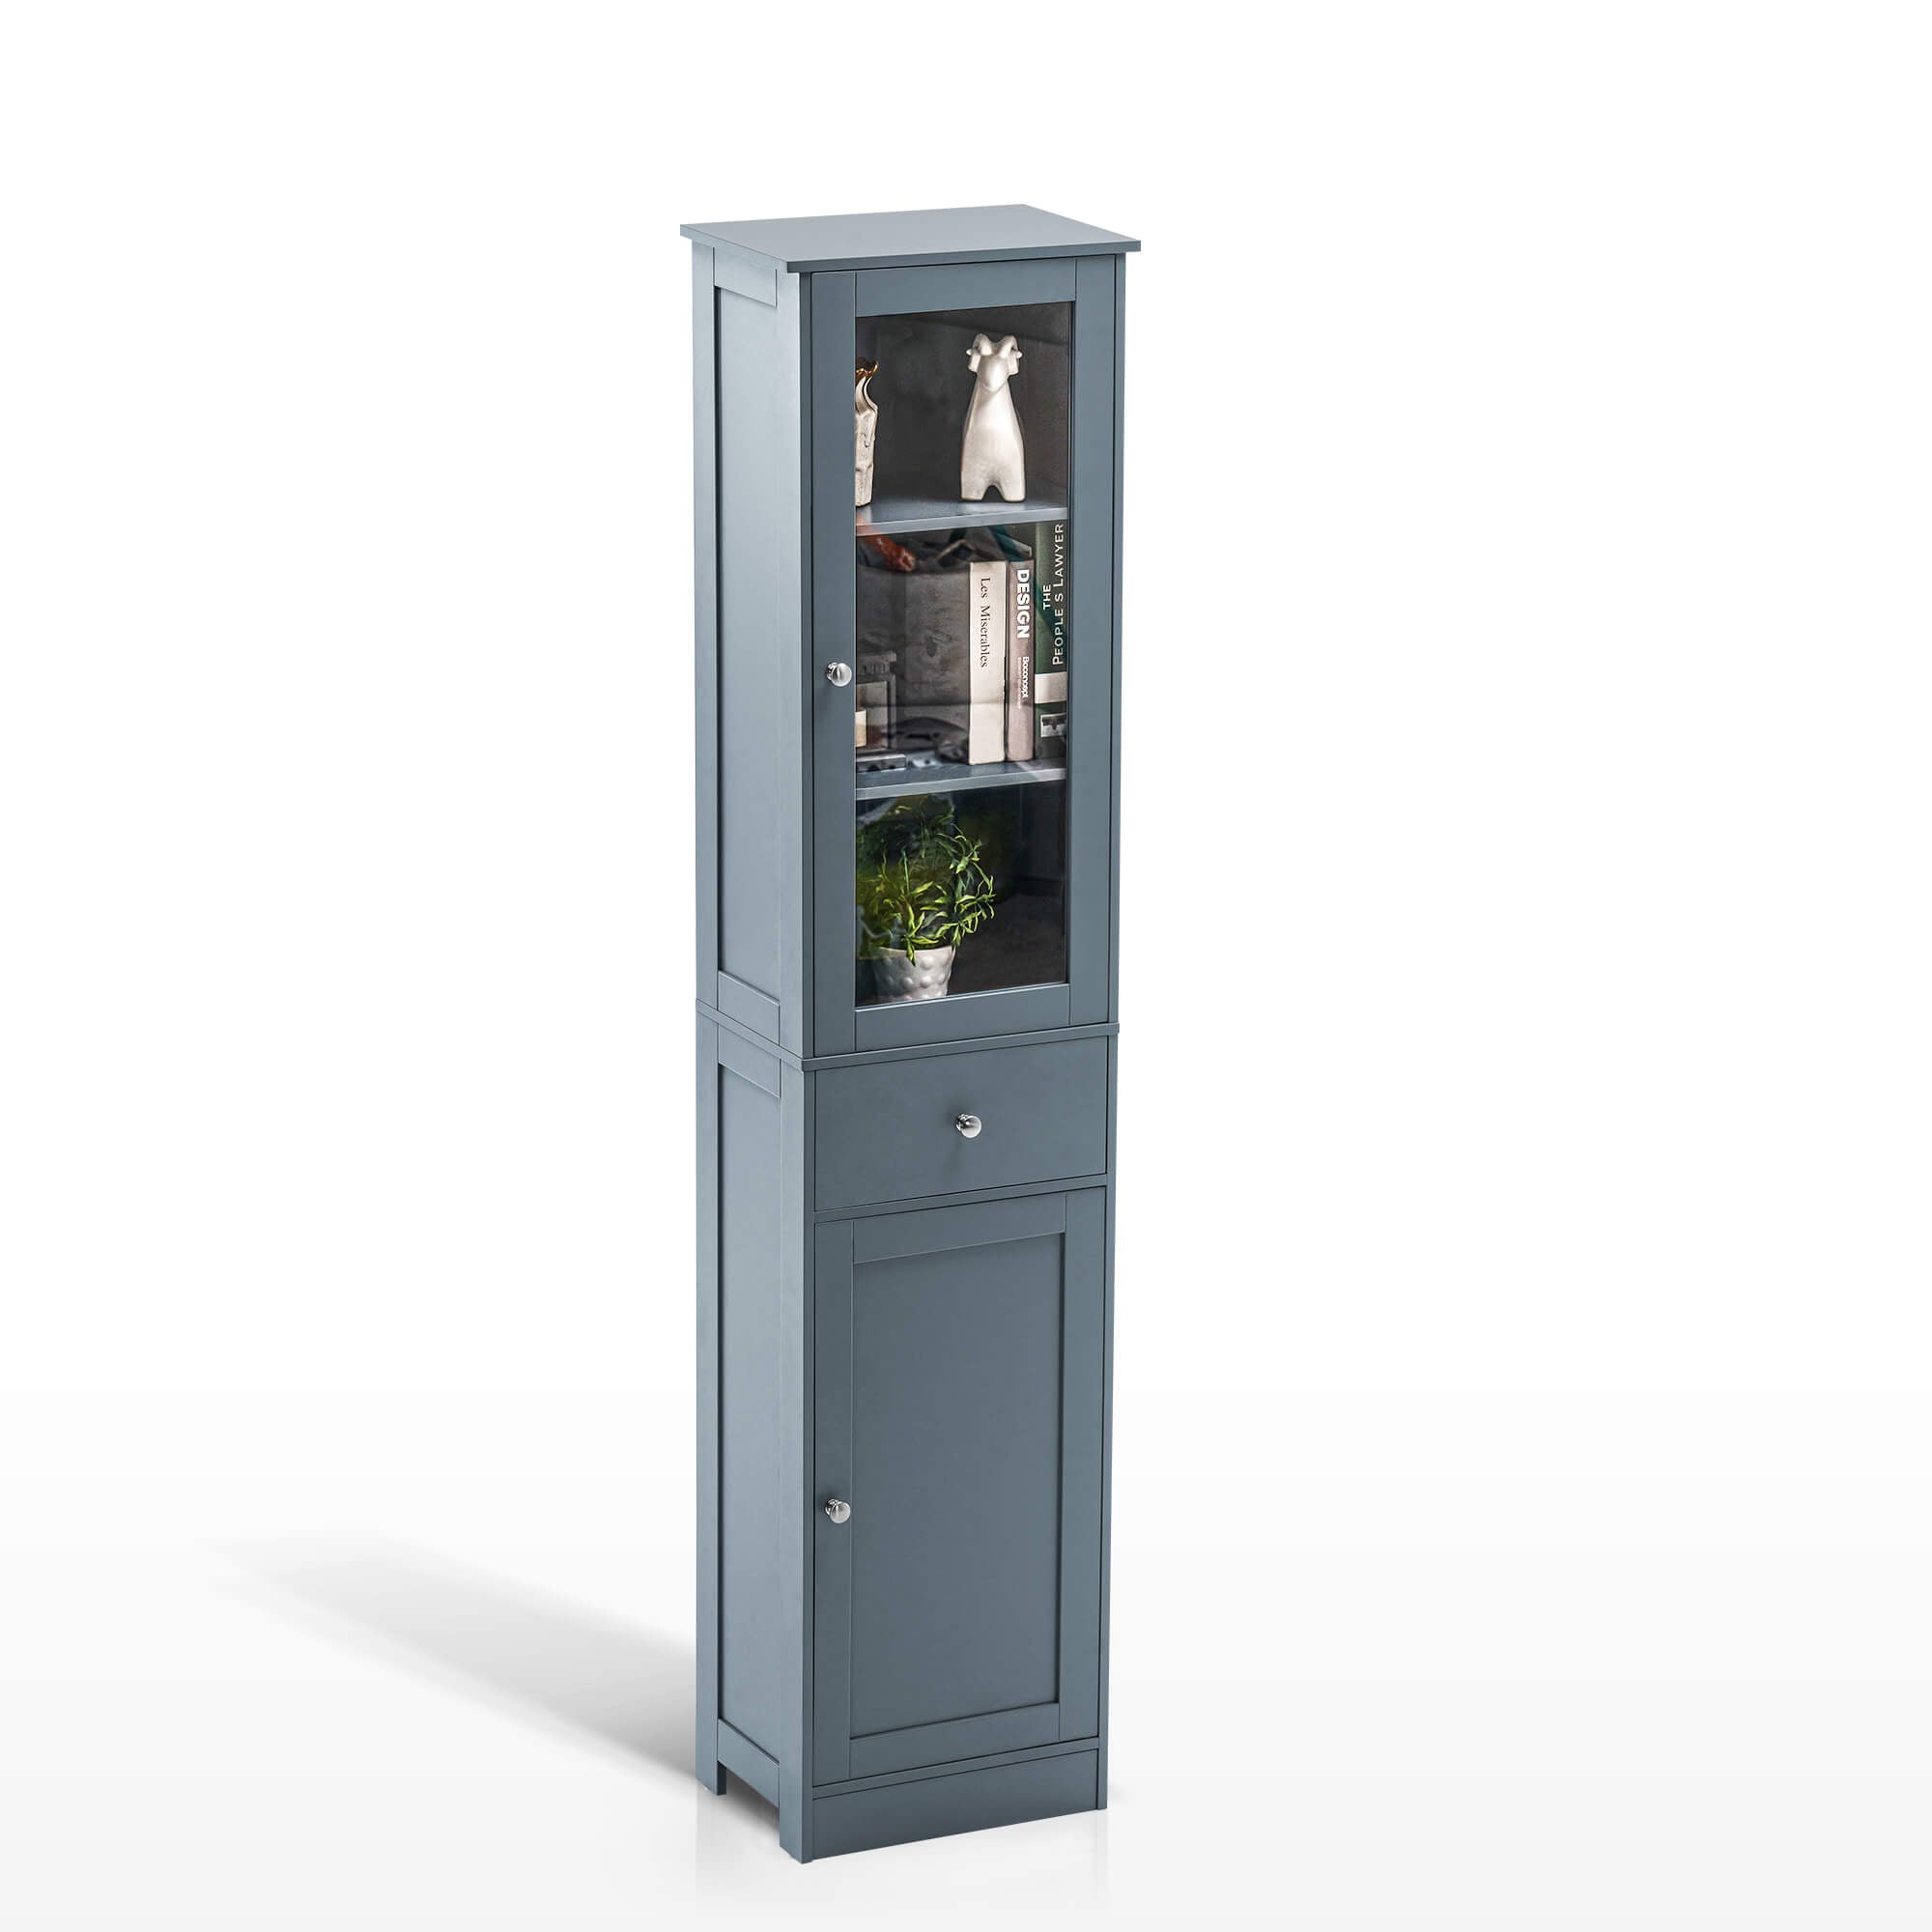 Ivinta Bathroom Storage Cabinet, Floor Standing Organizer Cabinet, Slim Bathroom Tower Cabinet